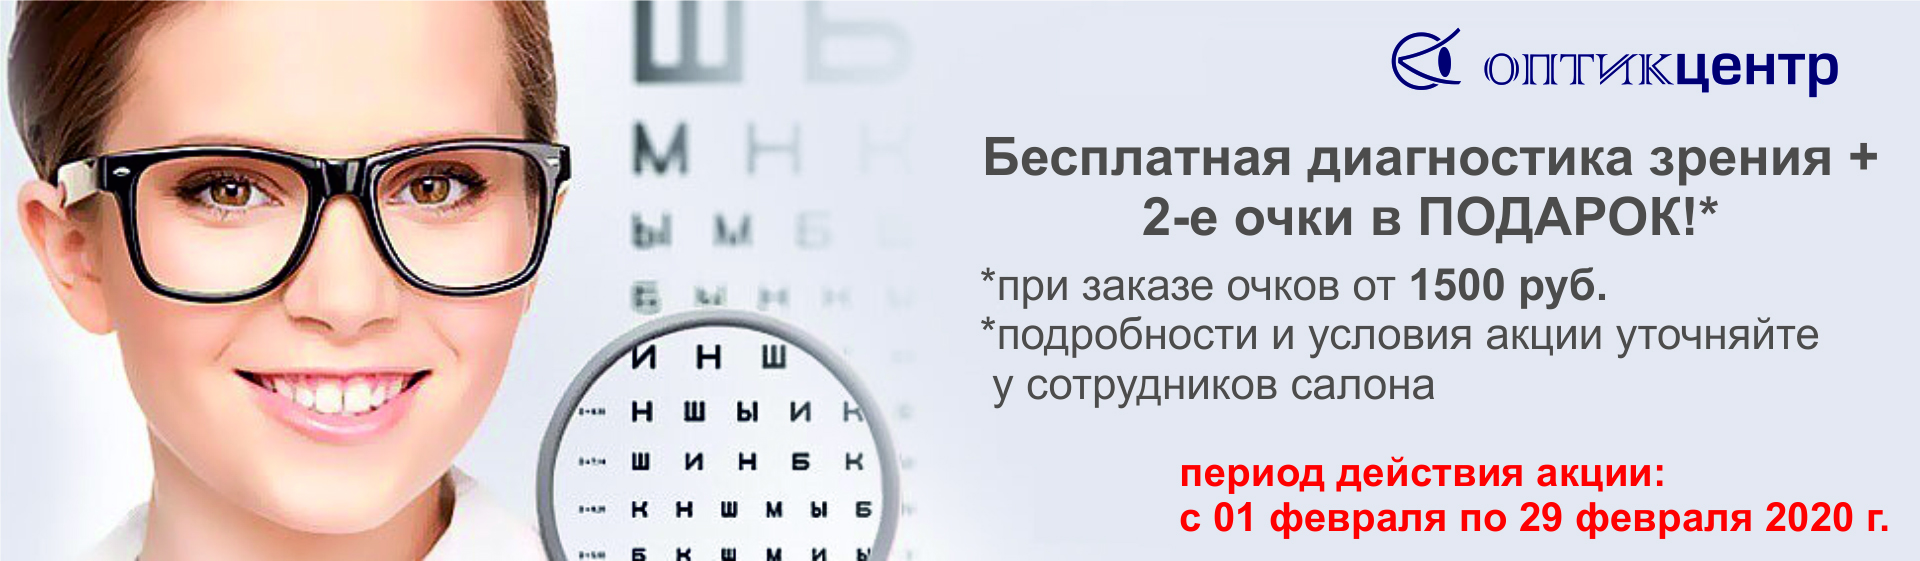 Где проверить зрение и купить. Проверка зрения реклама. Очки для зрения баннер. Реклама очков для зрения. Очки офтальмолога.